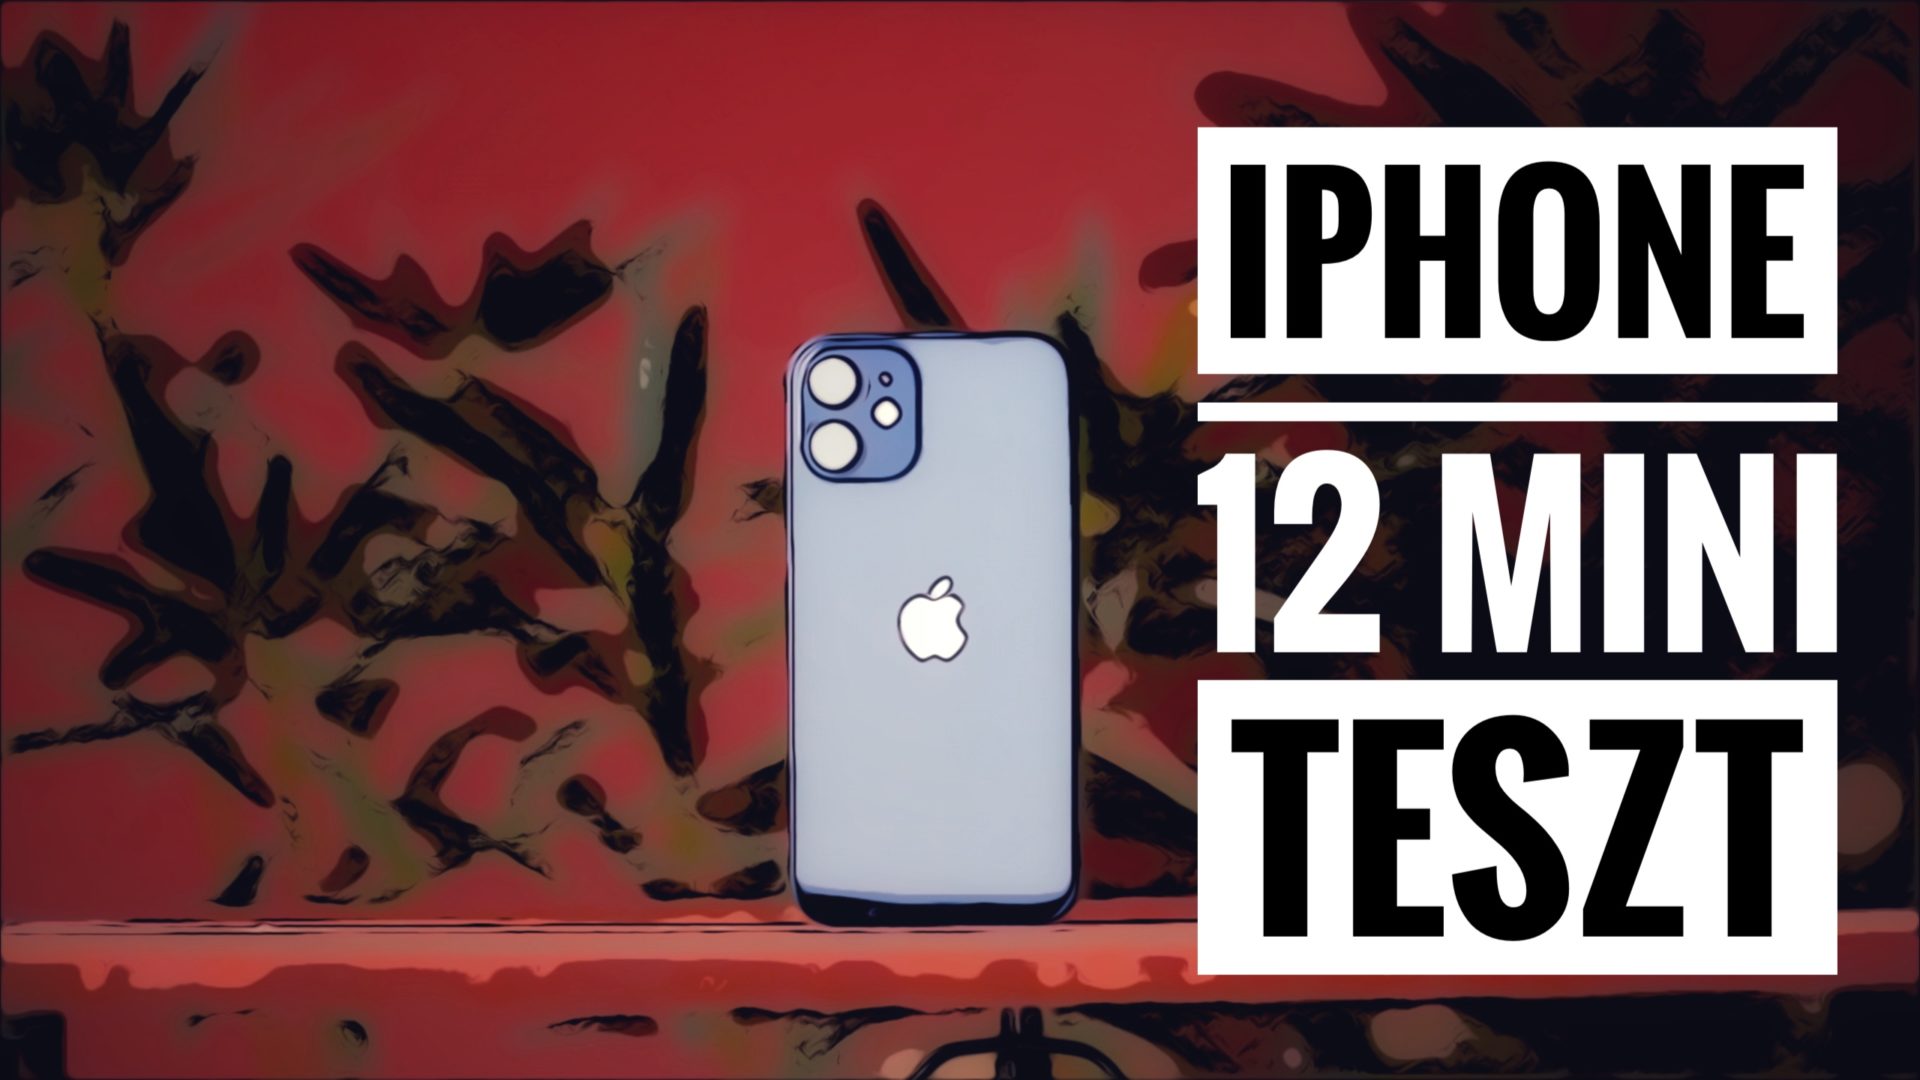 iphone 12 mini teszt